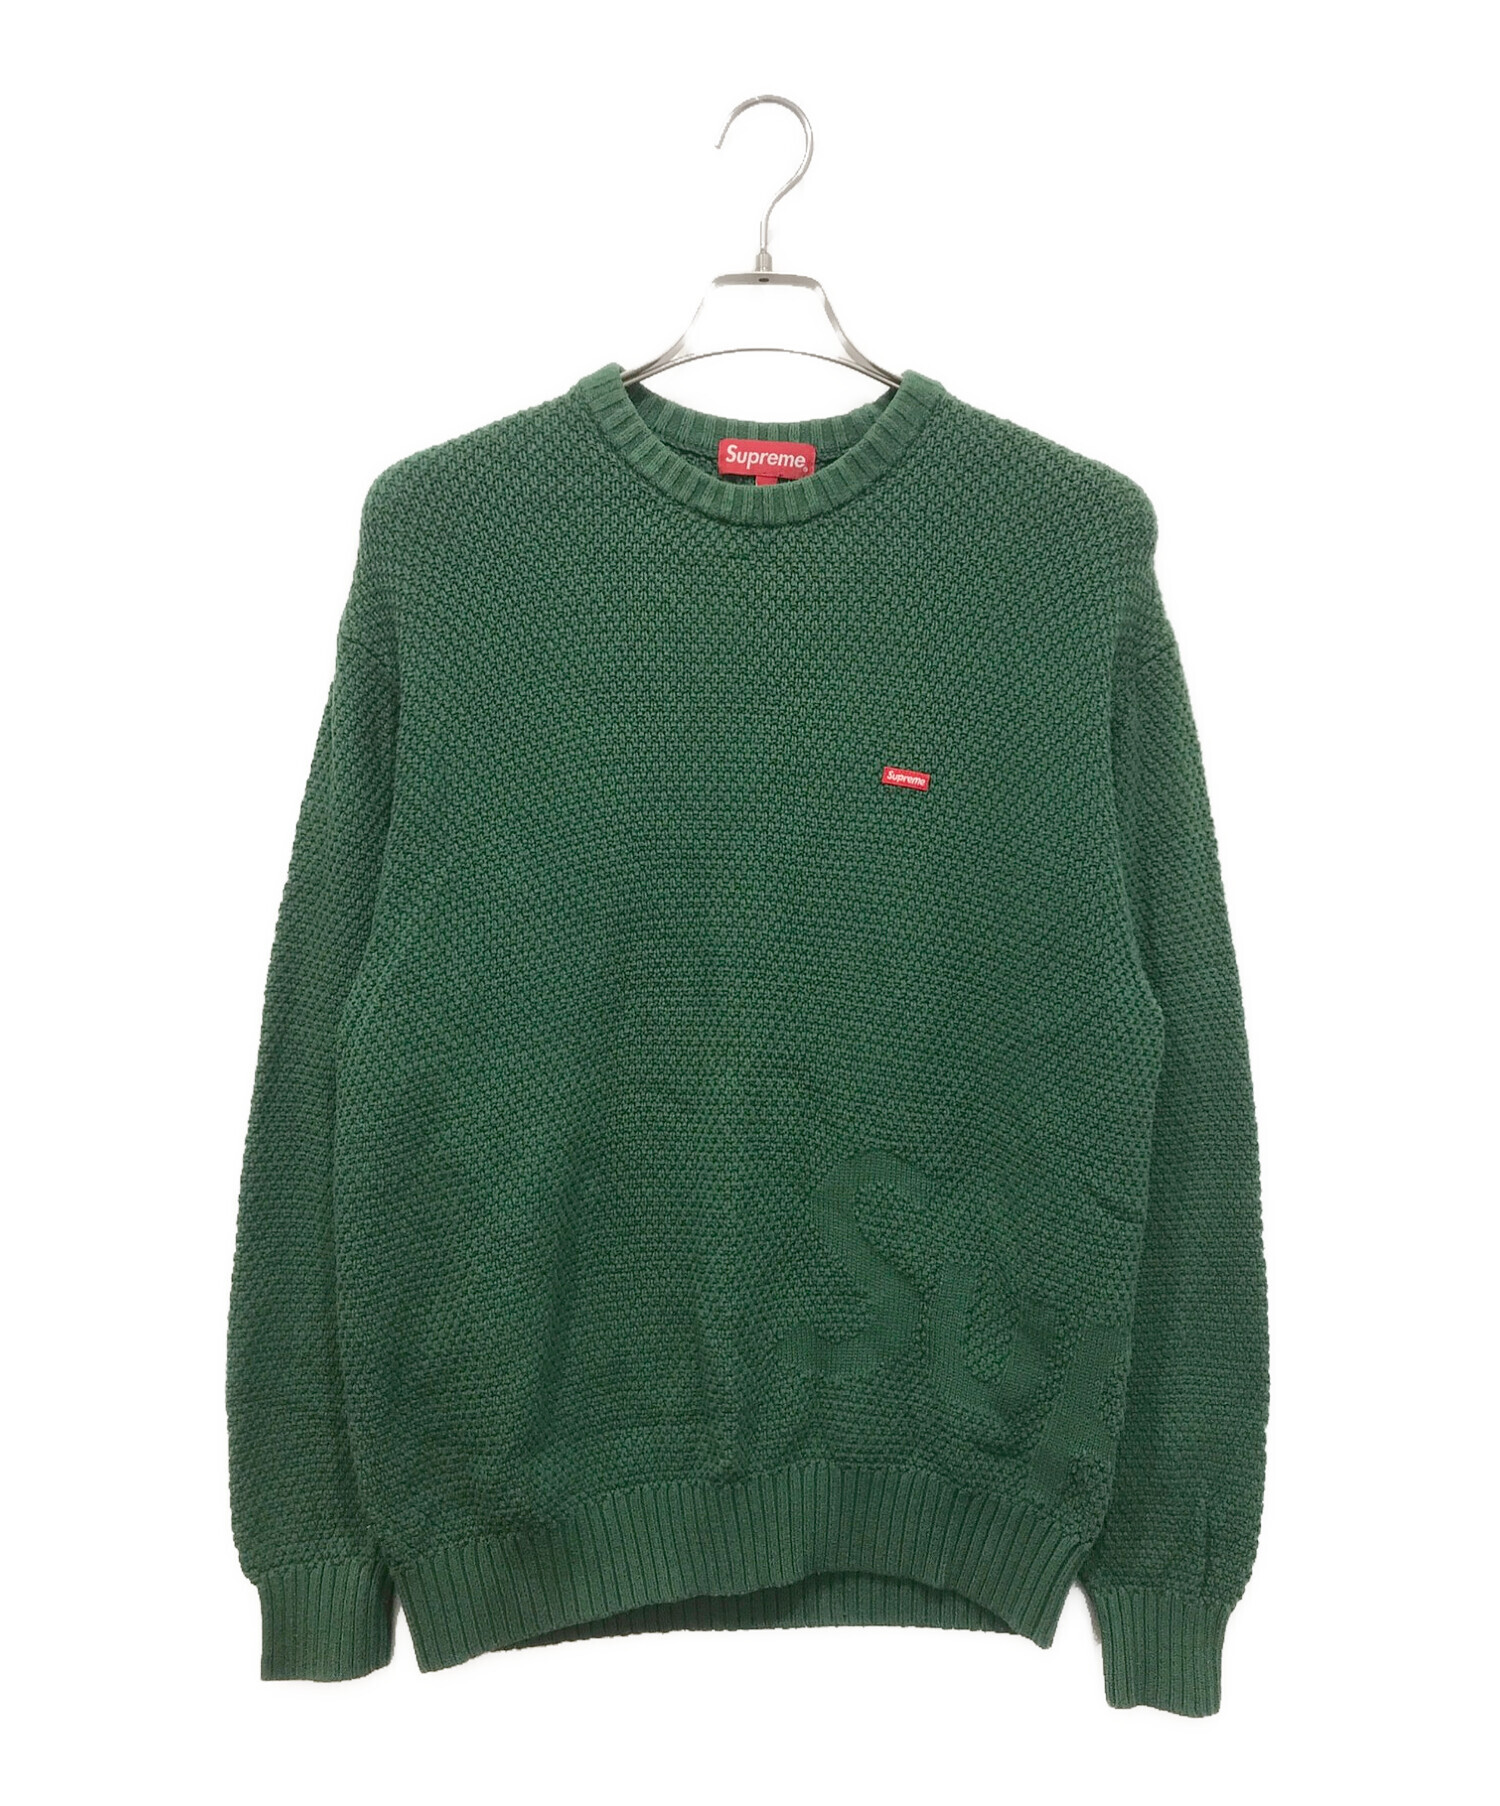 SUPREME (シュプリーム) Textured Small Box Sweater グリーン サイズ:M